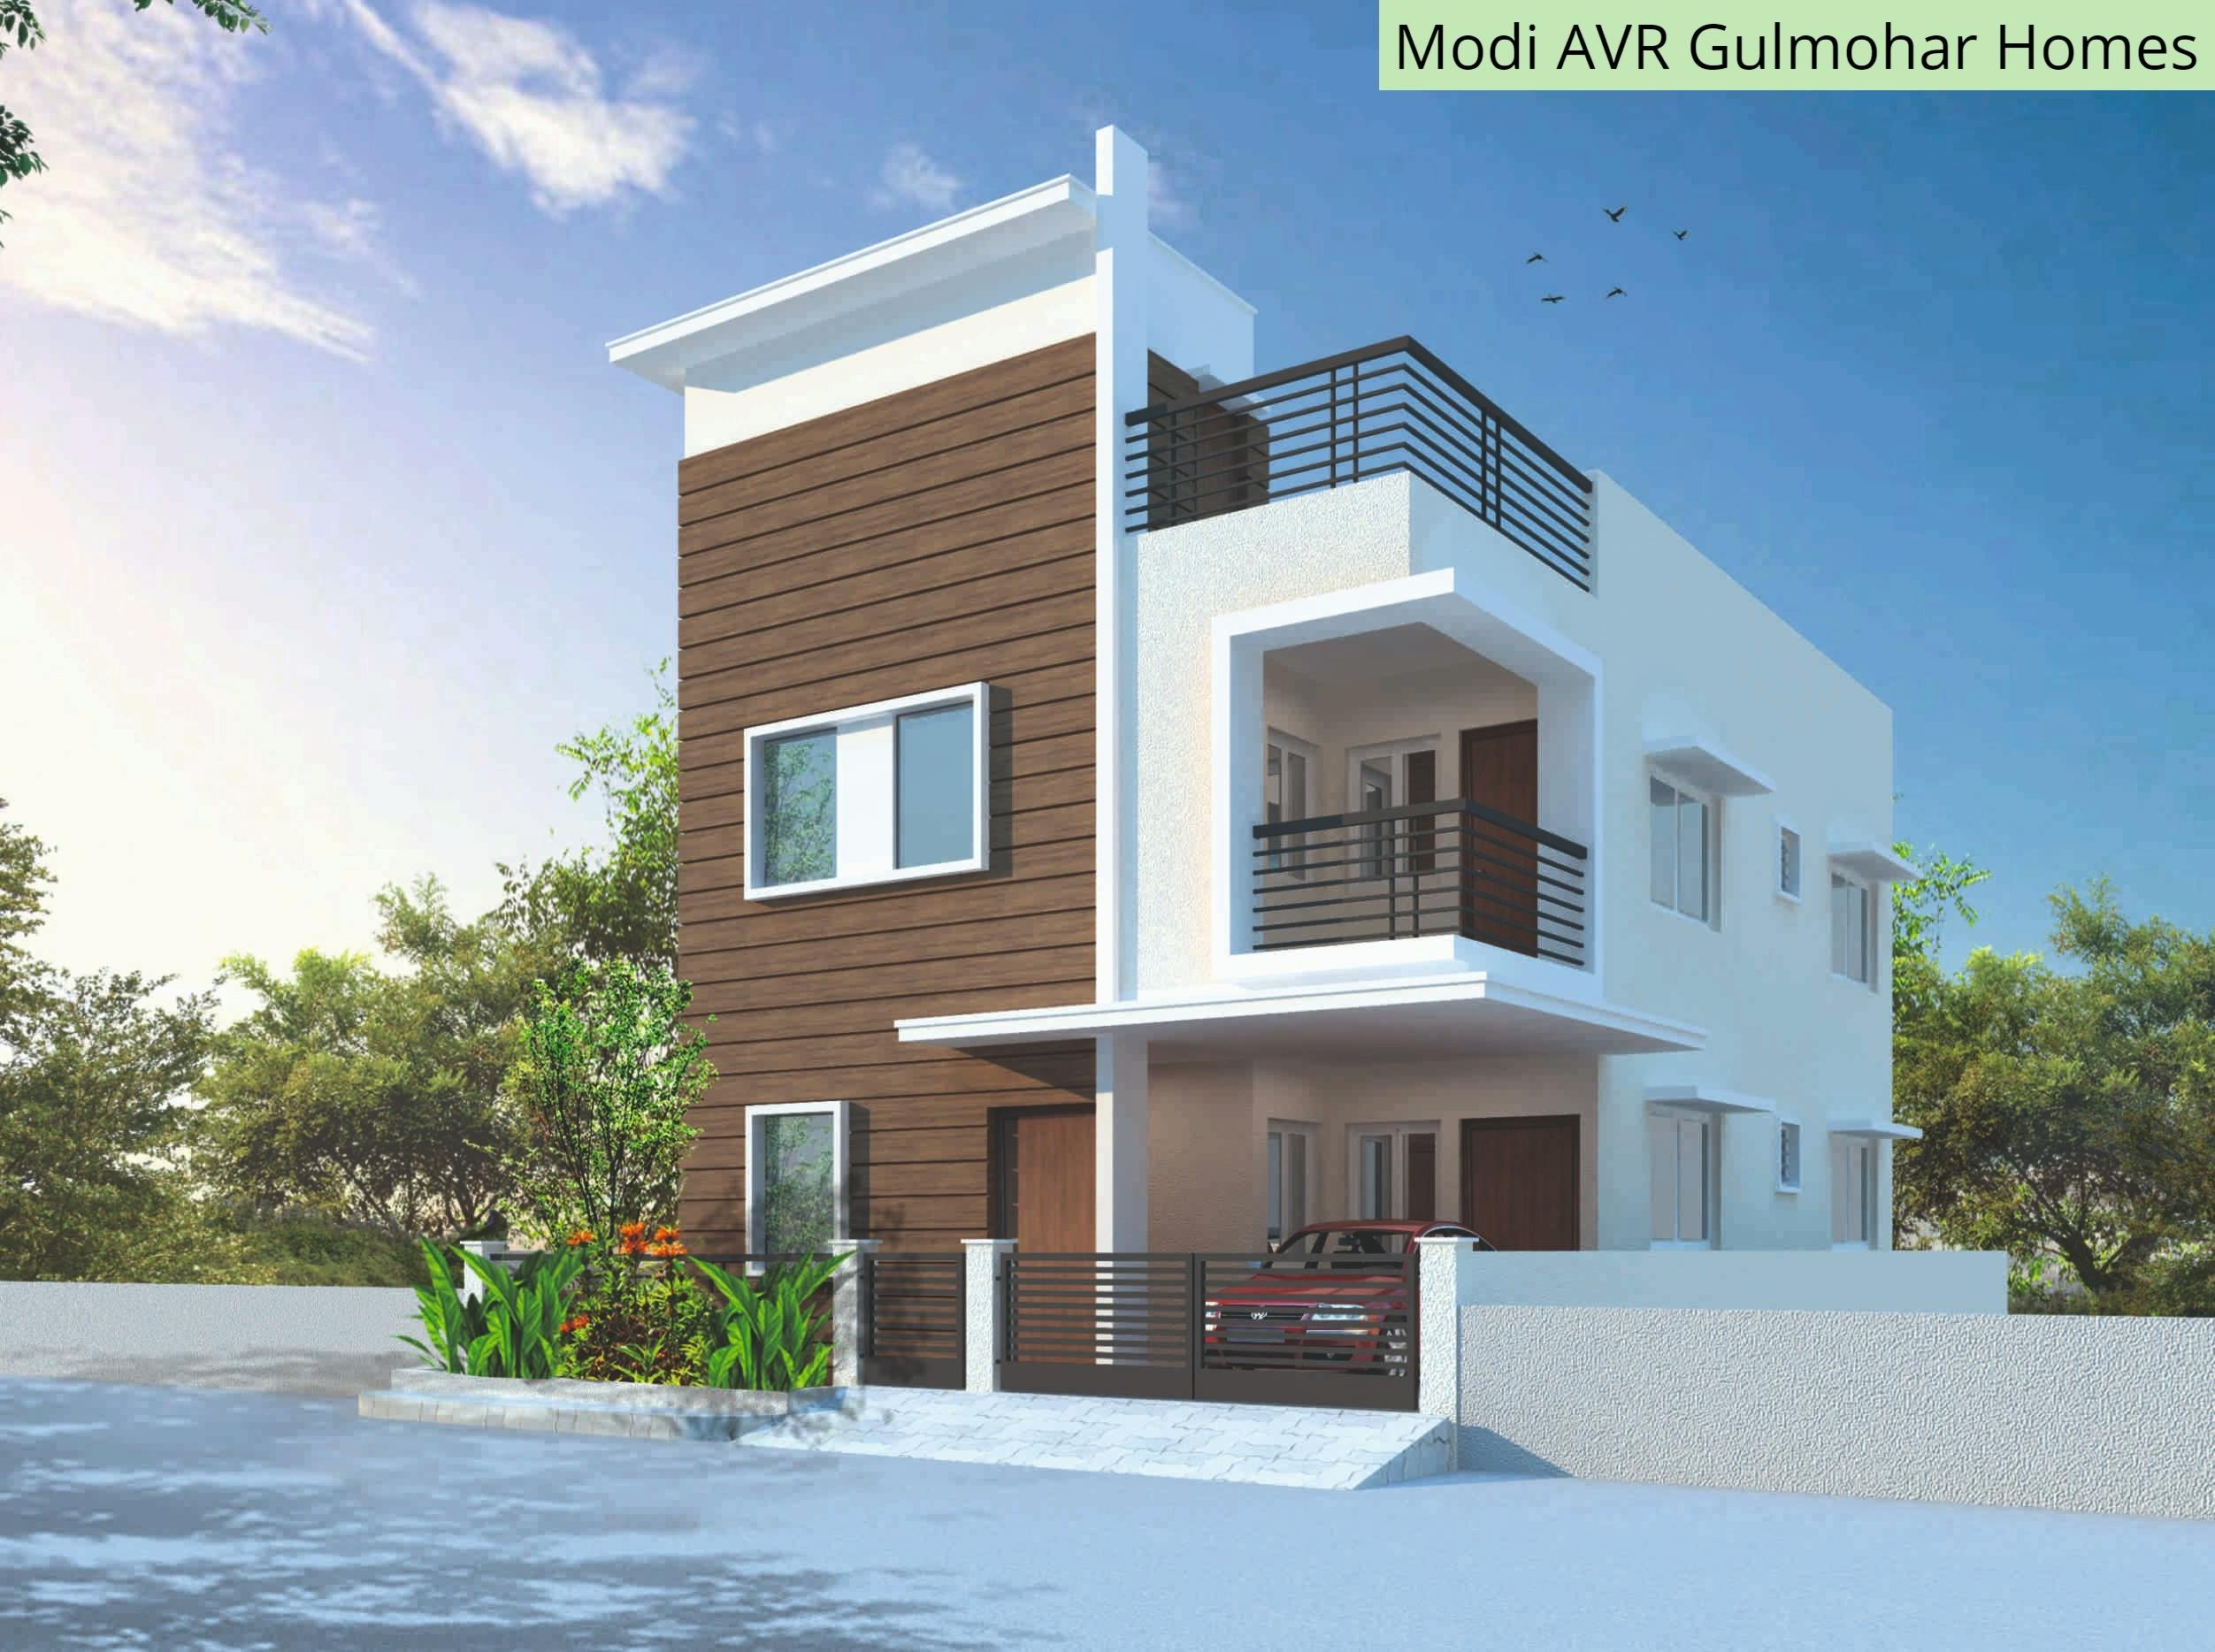 Floor plan for Modi AVR Gulmohar Homes